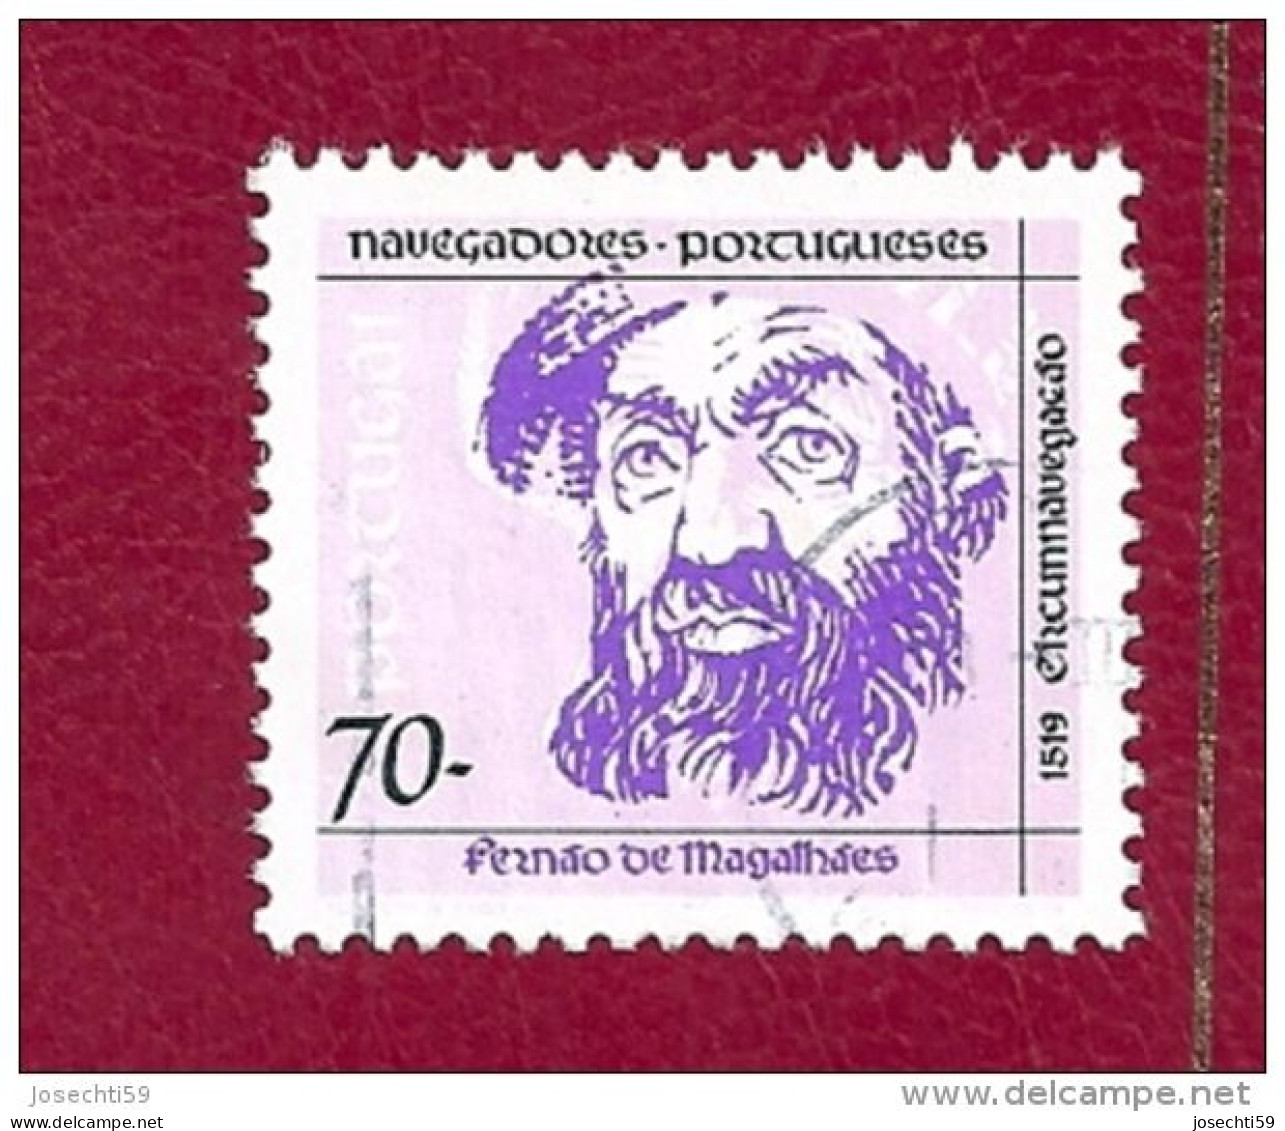 N° 1935 Navigateurs Portugais Fernao De Magalhaes  Timbre Portugal Oblitéré 1993 - Used Stamps